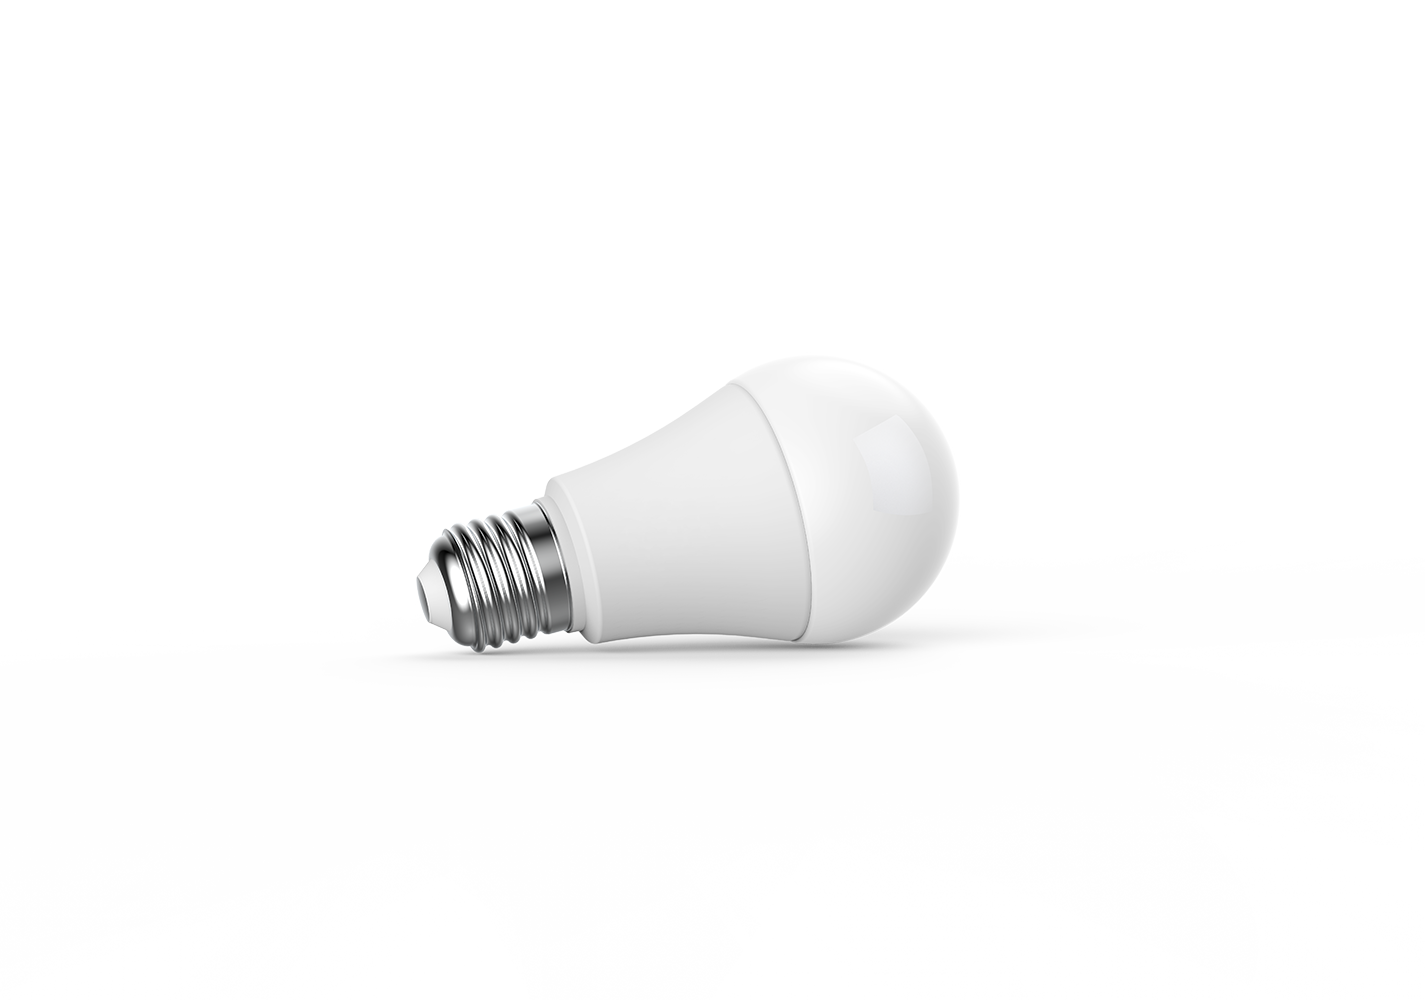 Aqara Smart Bulb